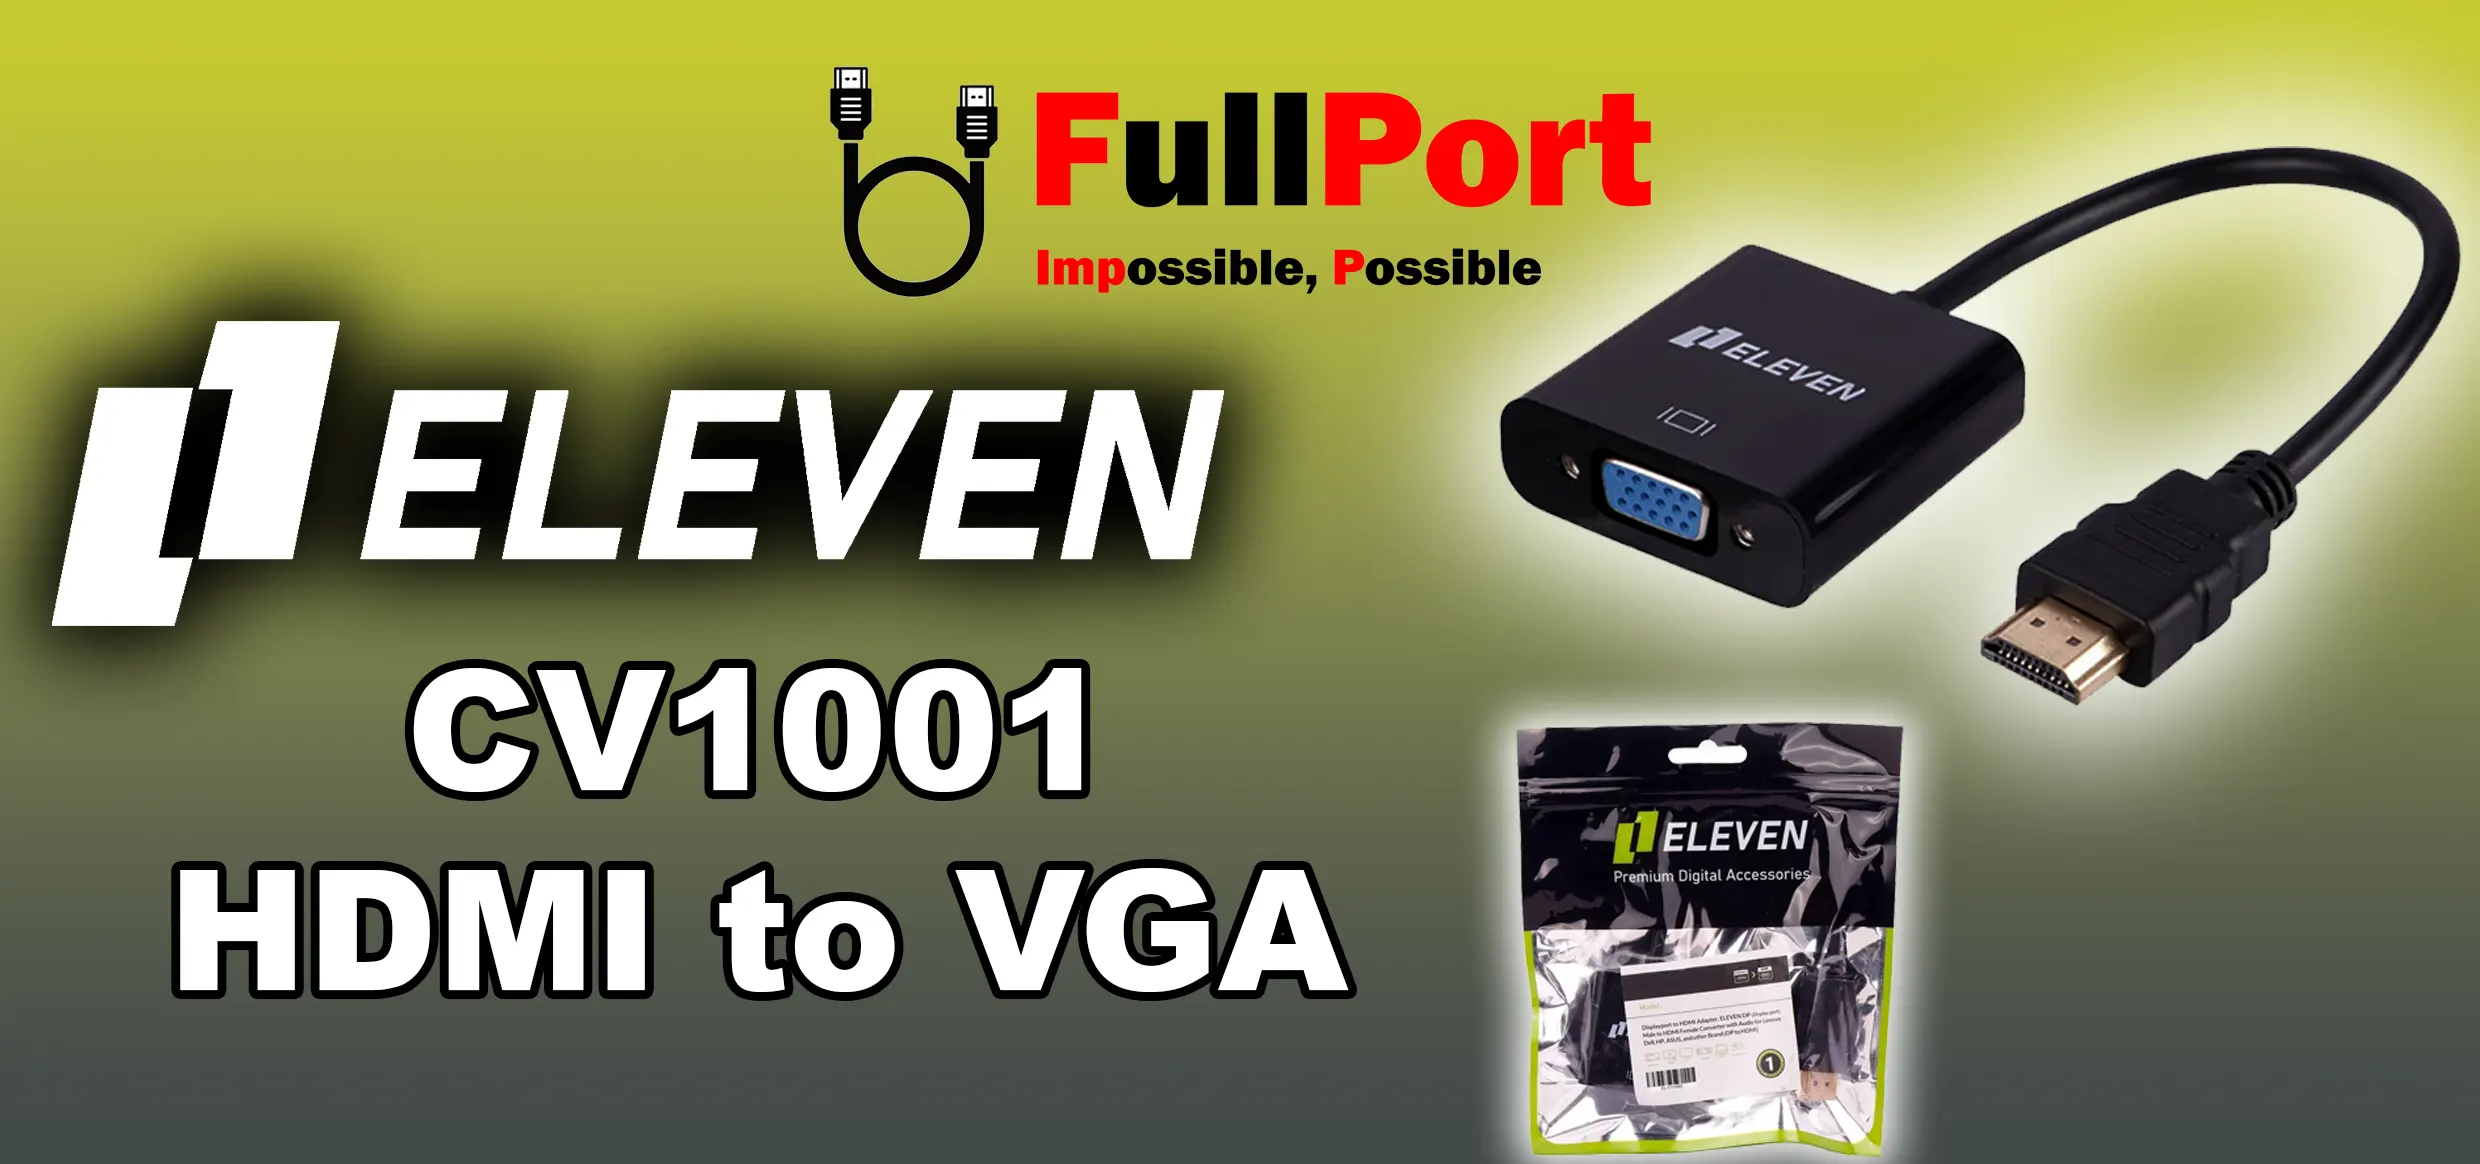 مشاهده و خرید اینترنتی مبدل HDMI به VGA ایلون | ELEVEN مدل CV1001 با گارانتی ایلون 1 سال از فروشگاه اینترنتی فول پورت زیر قیمت بازار